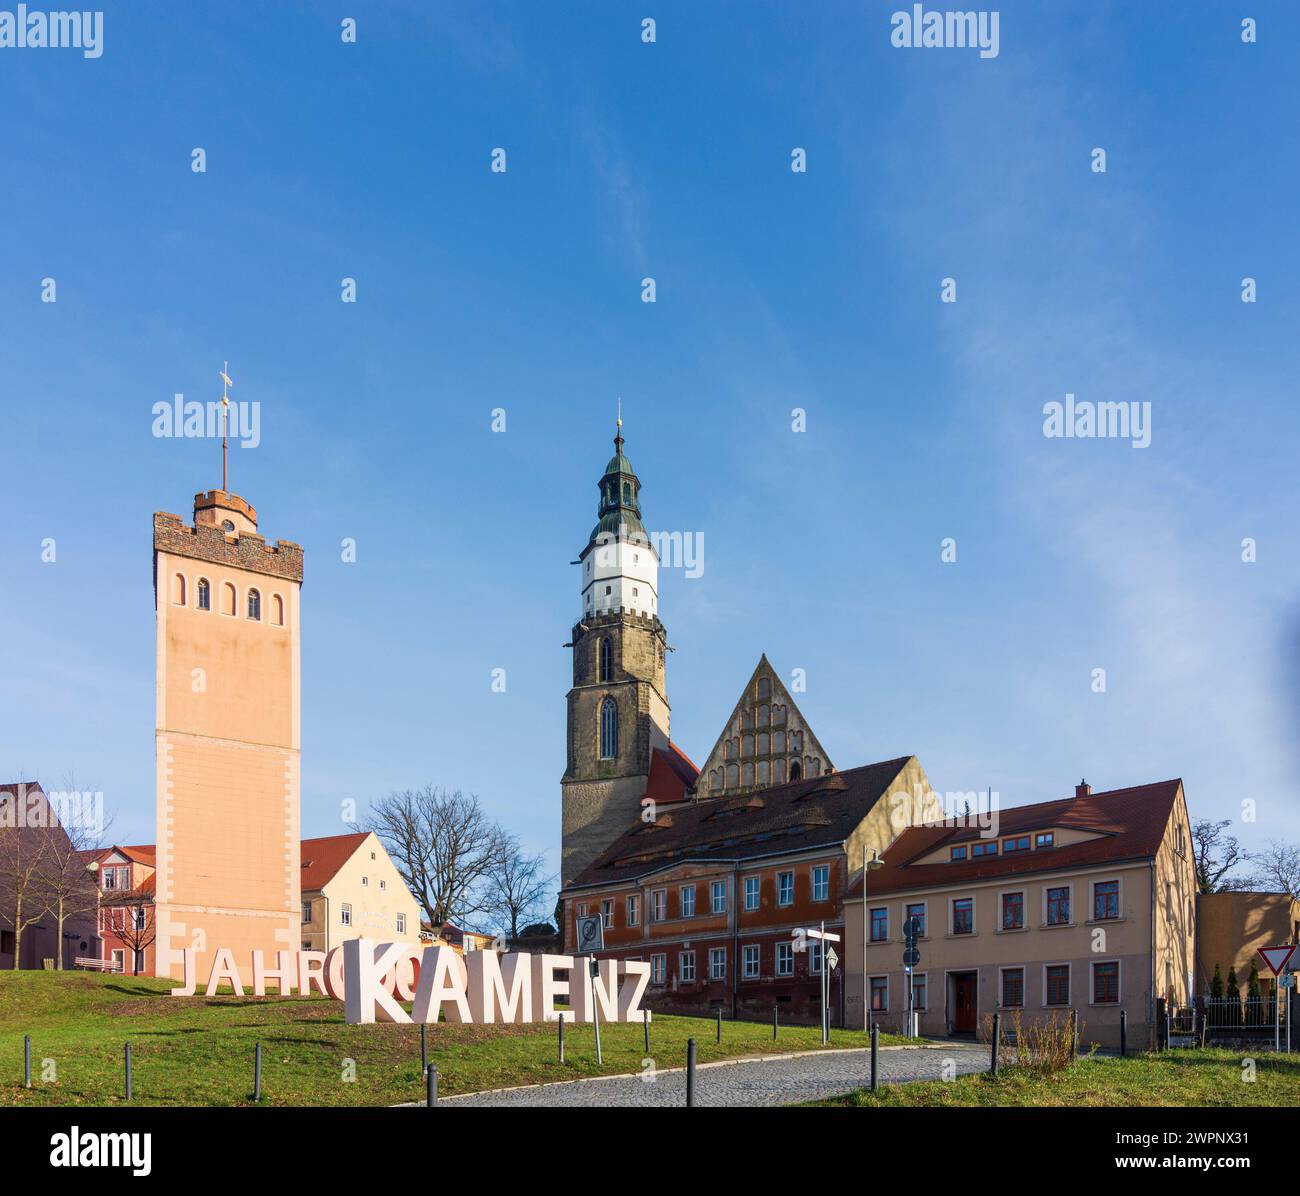 Kamenz (Kamjenc), tour Roter Turm, église principale Marien, panneau '800 Jahre Kamenz', Saxe, Allemagne Banque D'Images